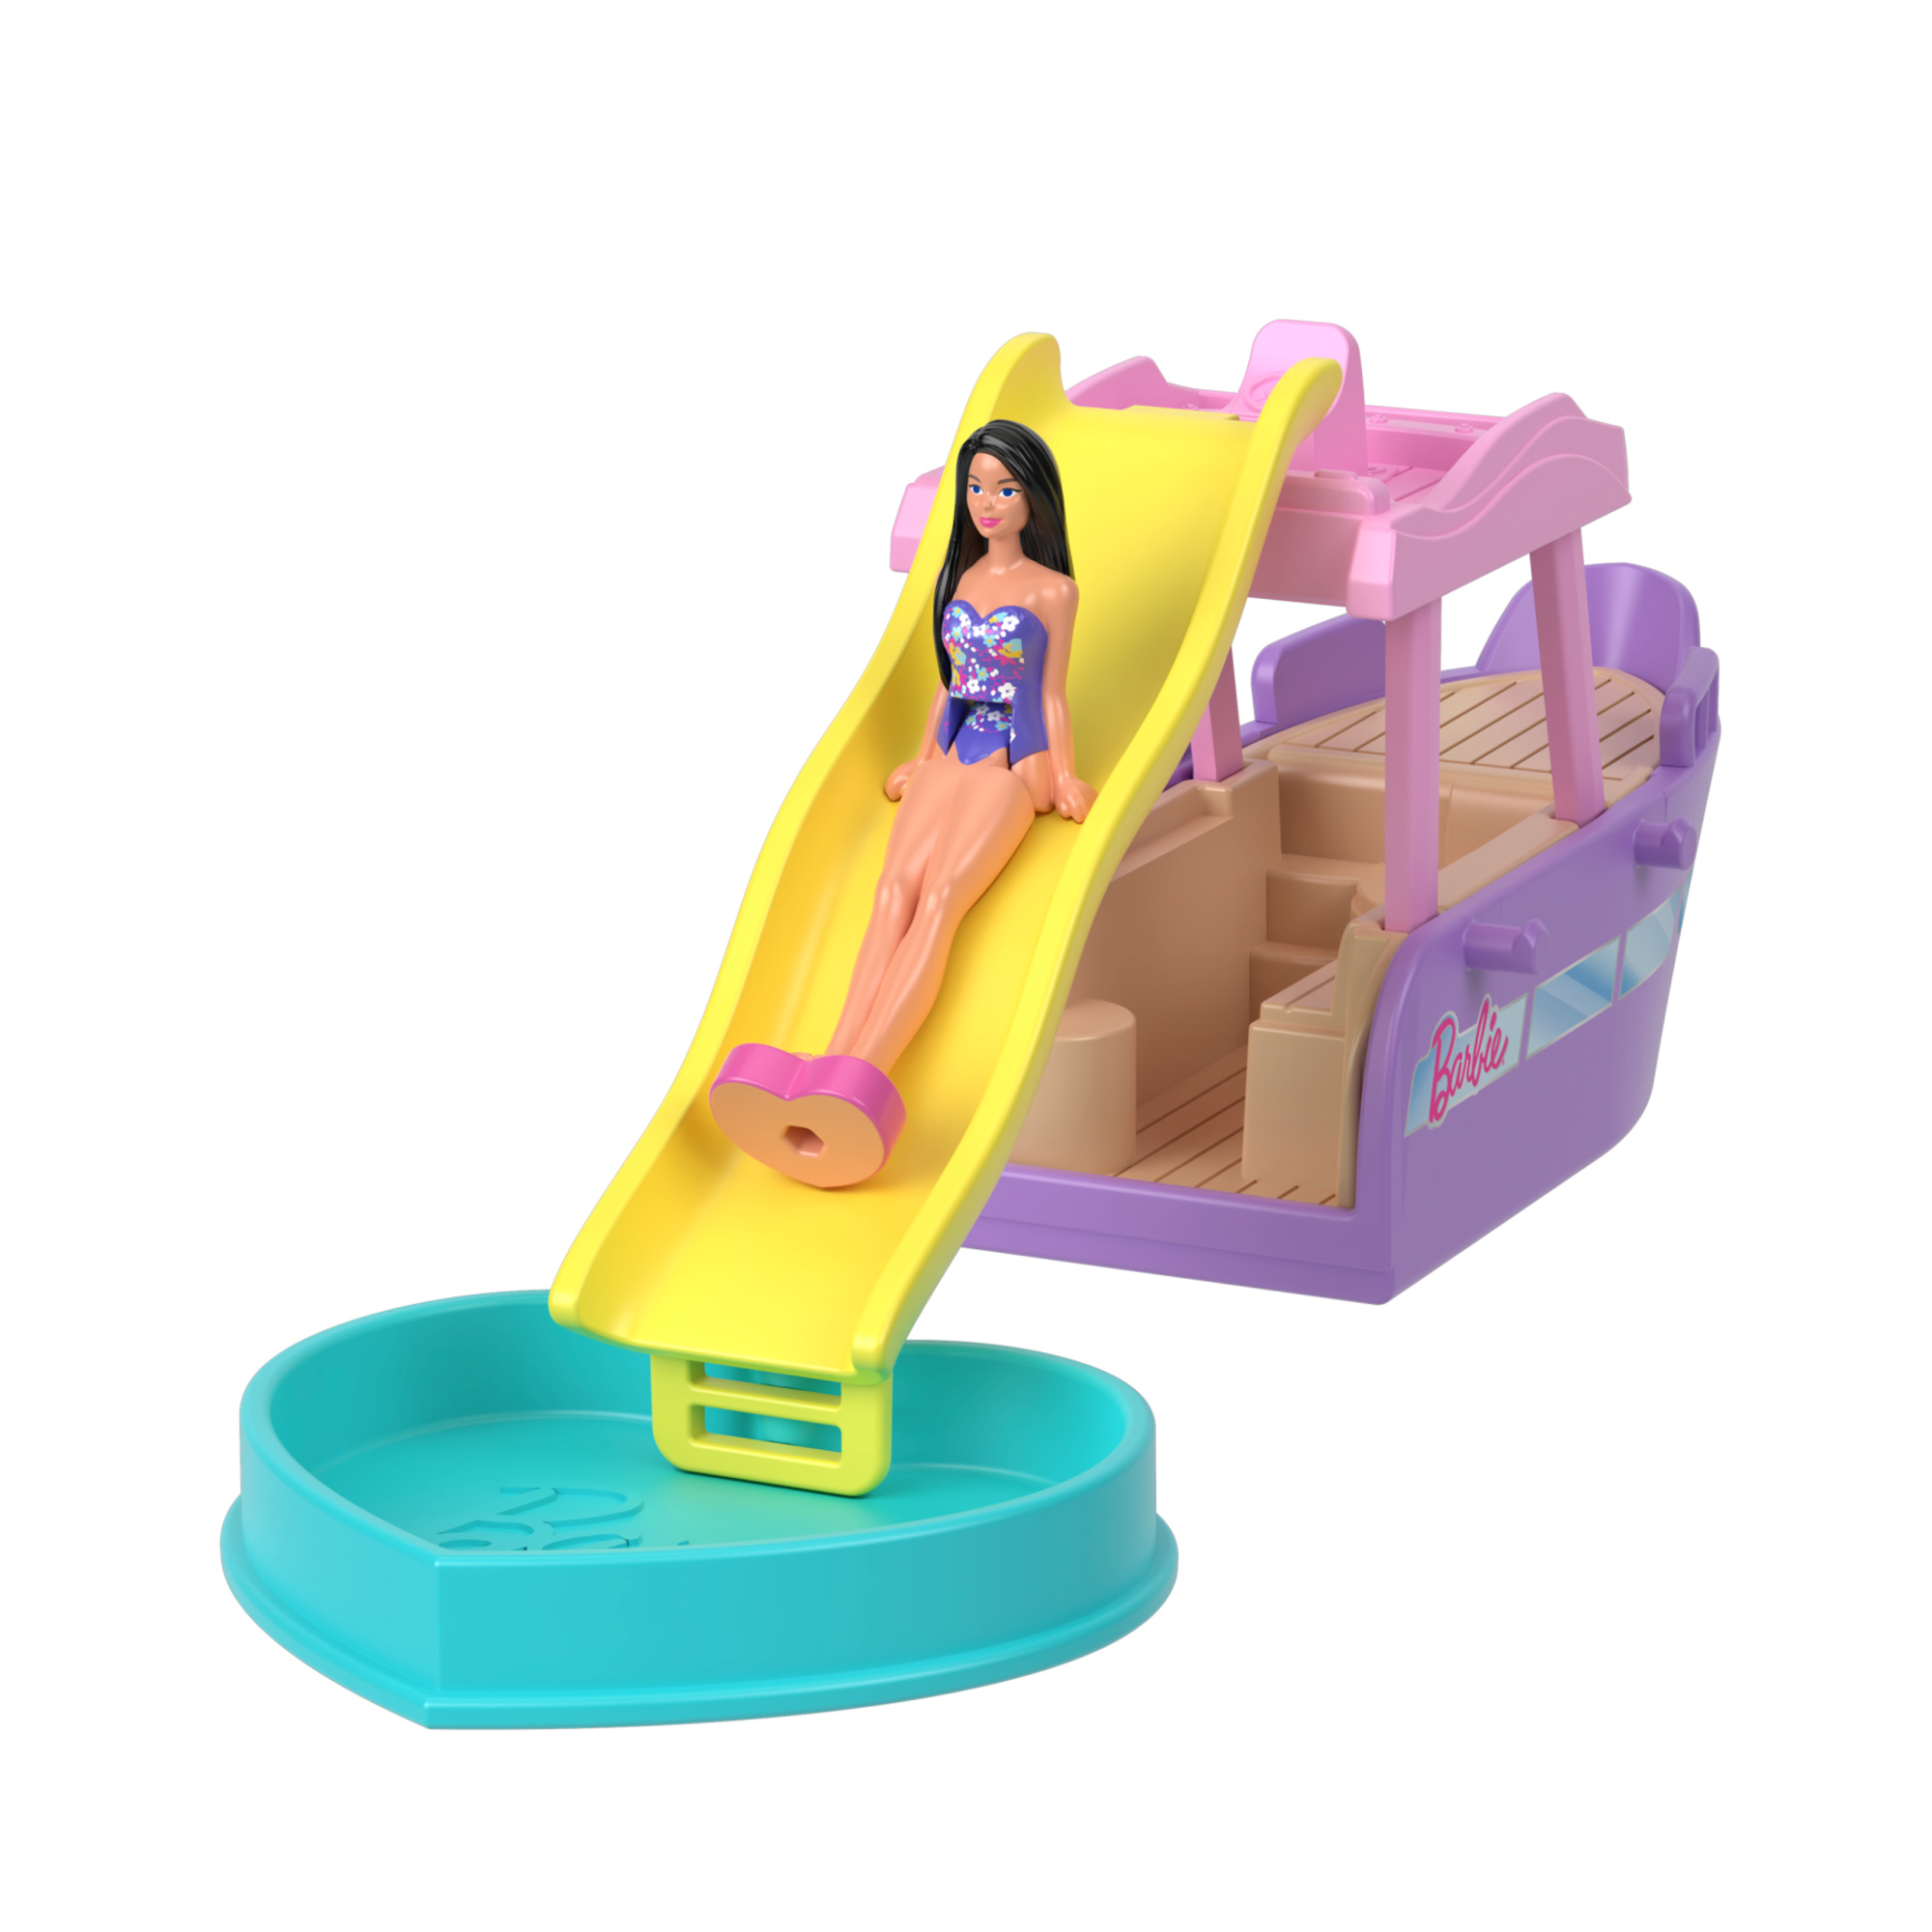 Mini barbieland - barca dei sogni - set con mini veicolo e bambola con sorpresa cambia colore in acqua - Barbie